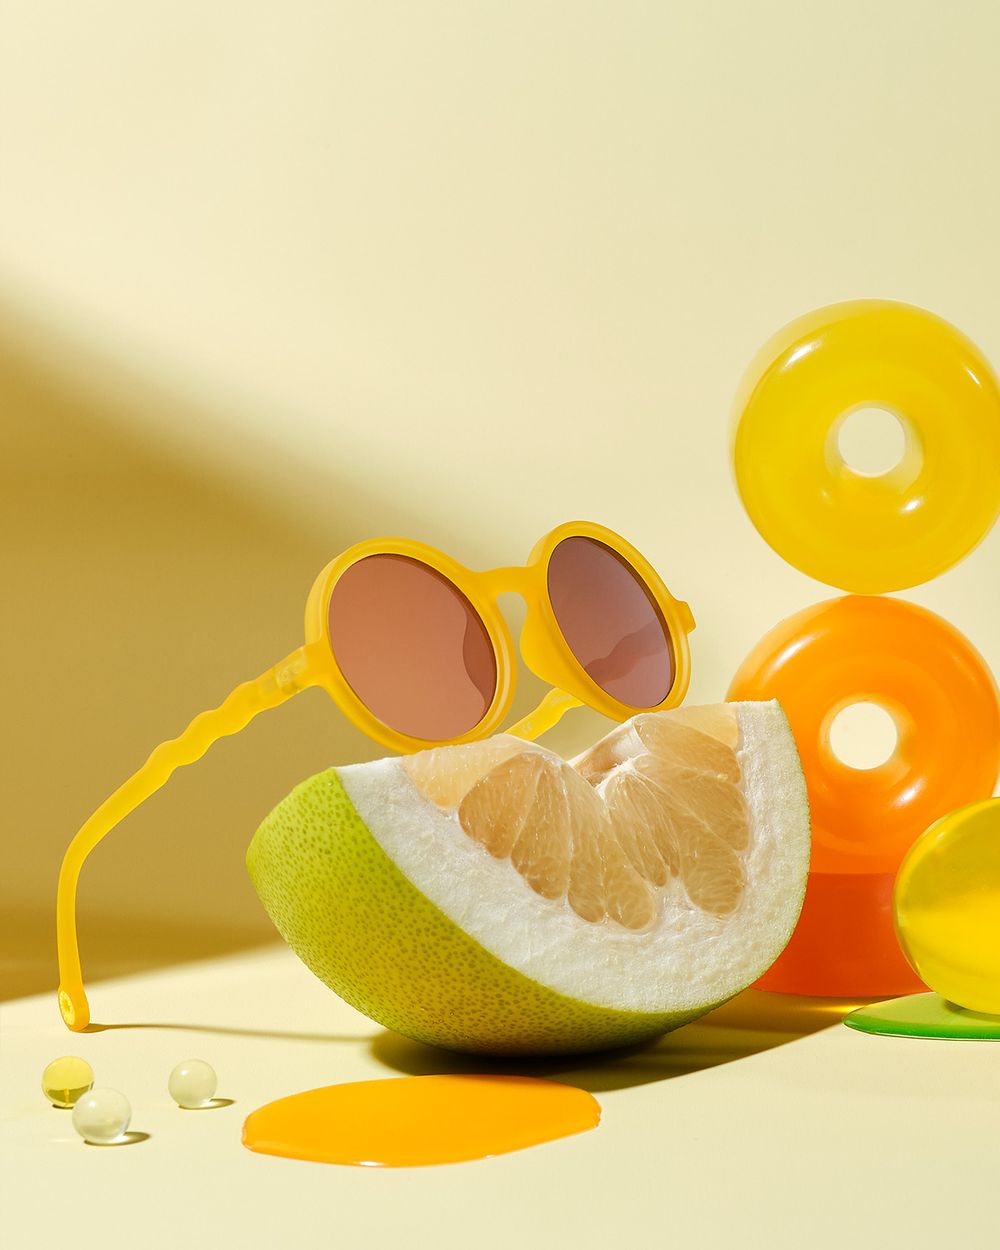 Junior Round Sunglasses Citrus Yellow